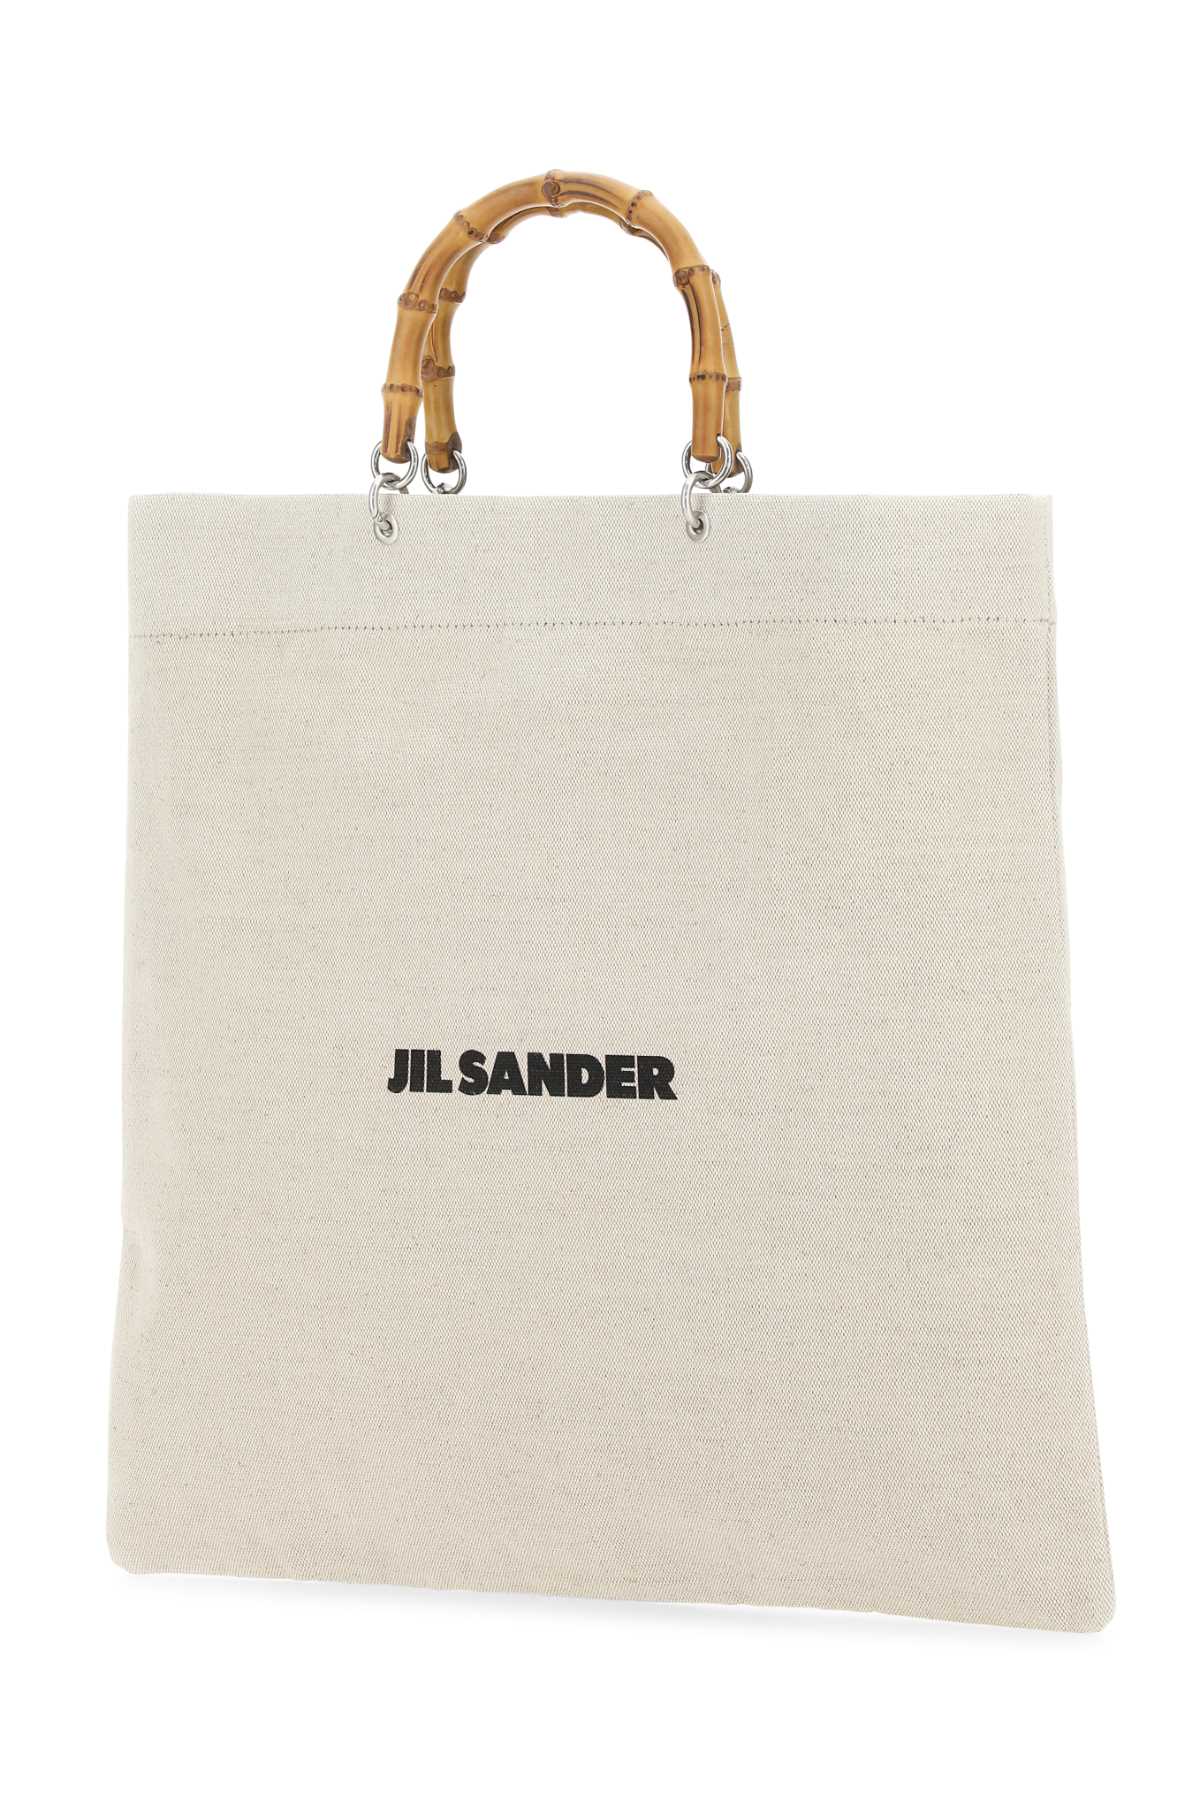 Jil Sander Sand Canvas Handbag In 280